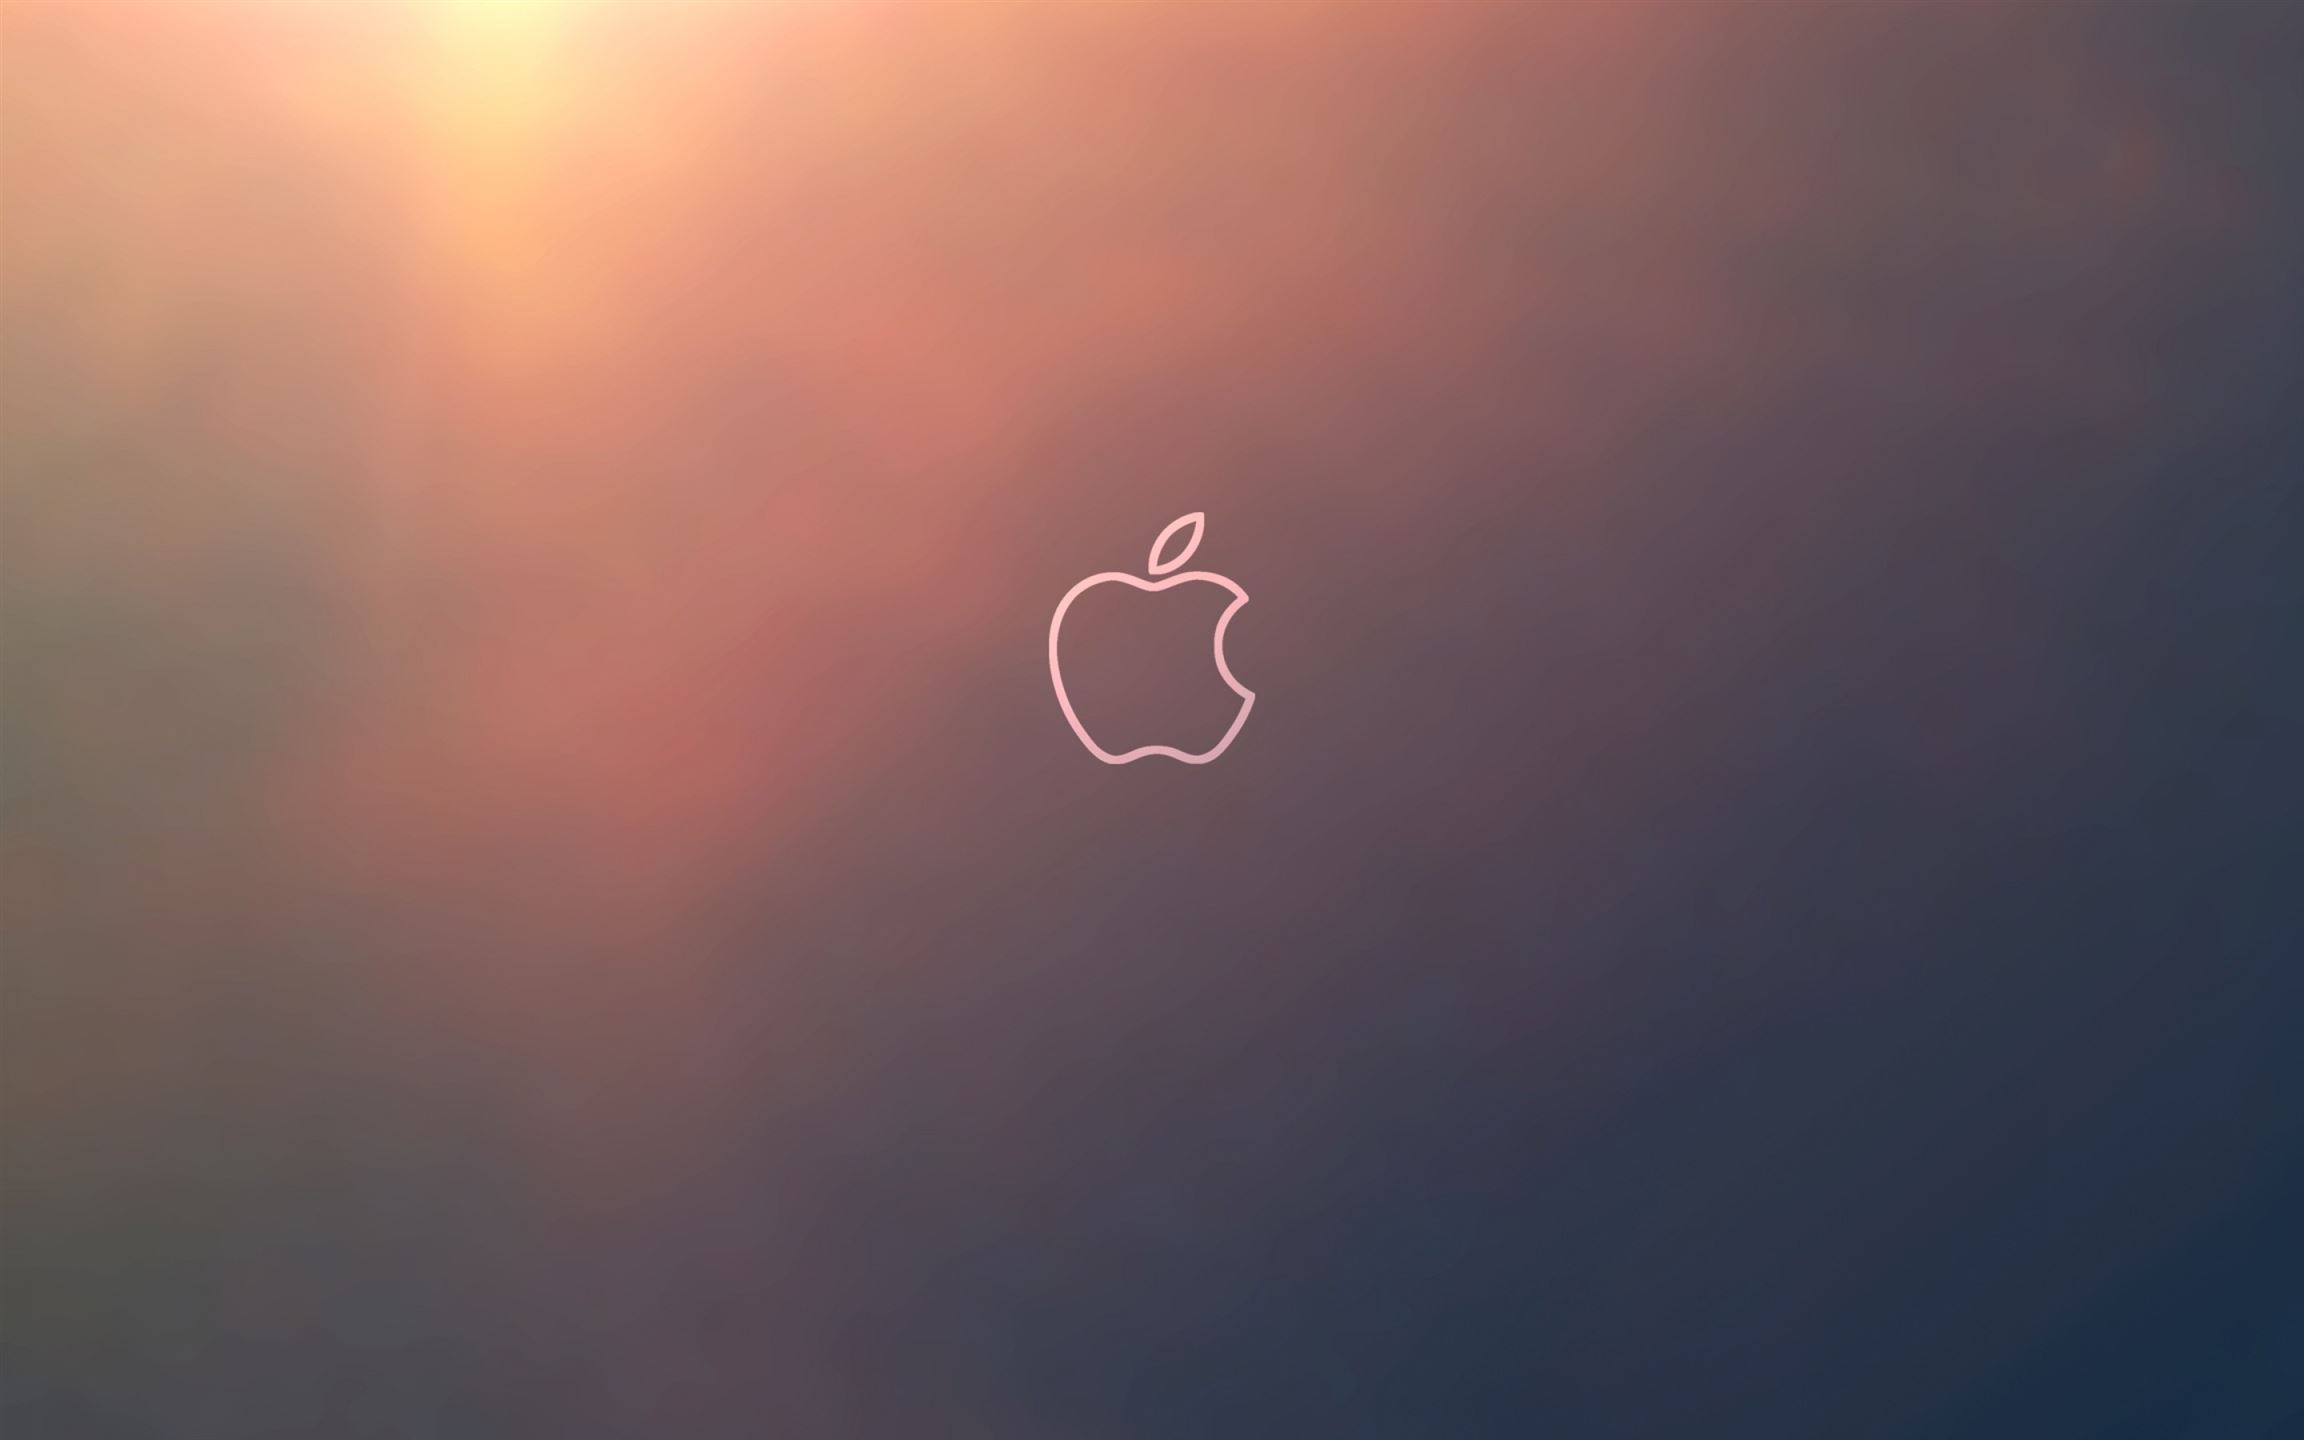 macbook pro 12 inch retina (2304x1440) download